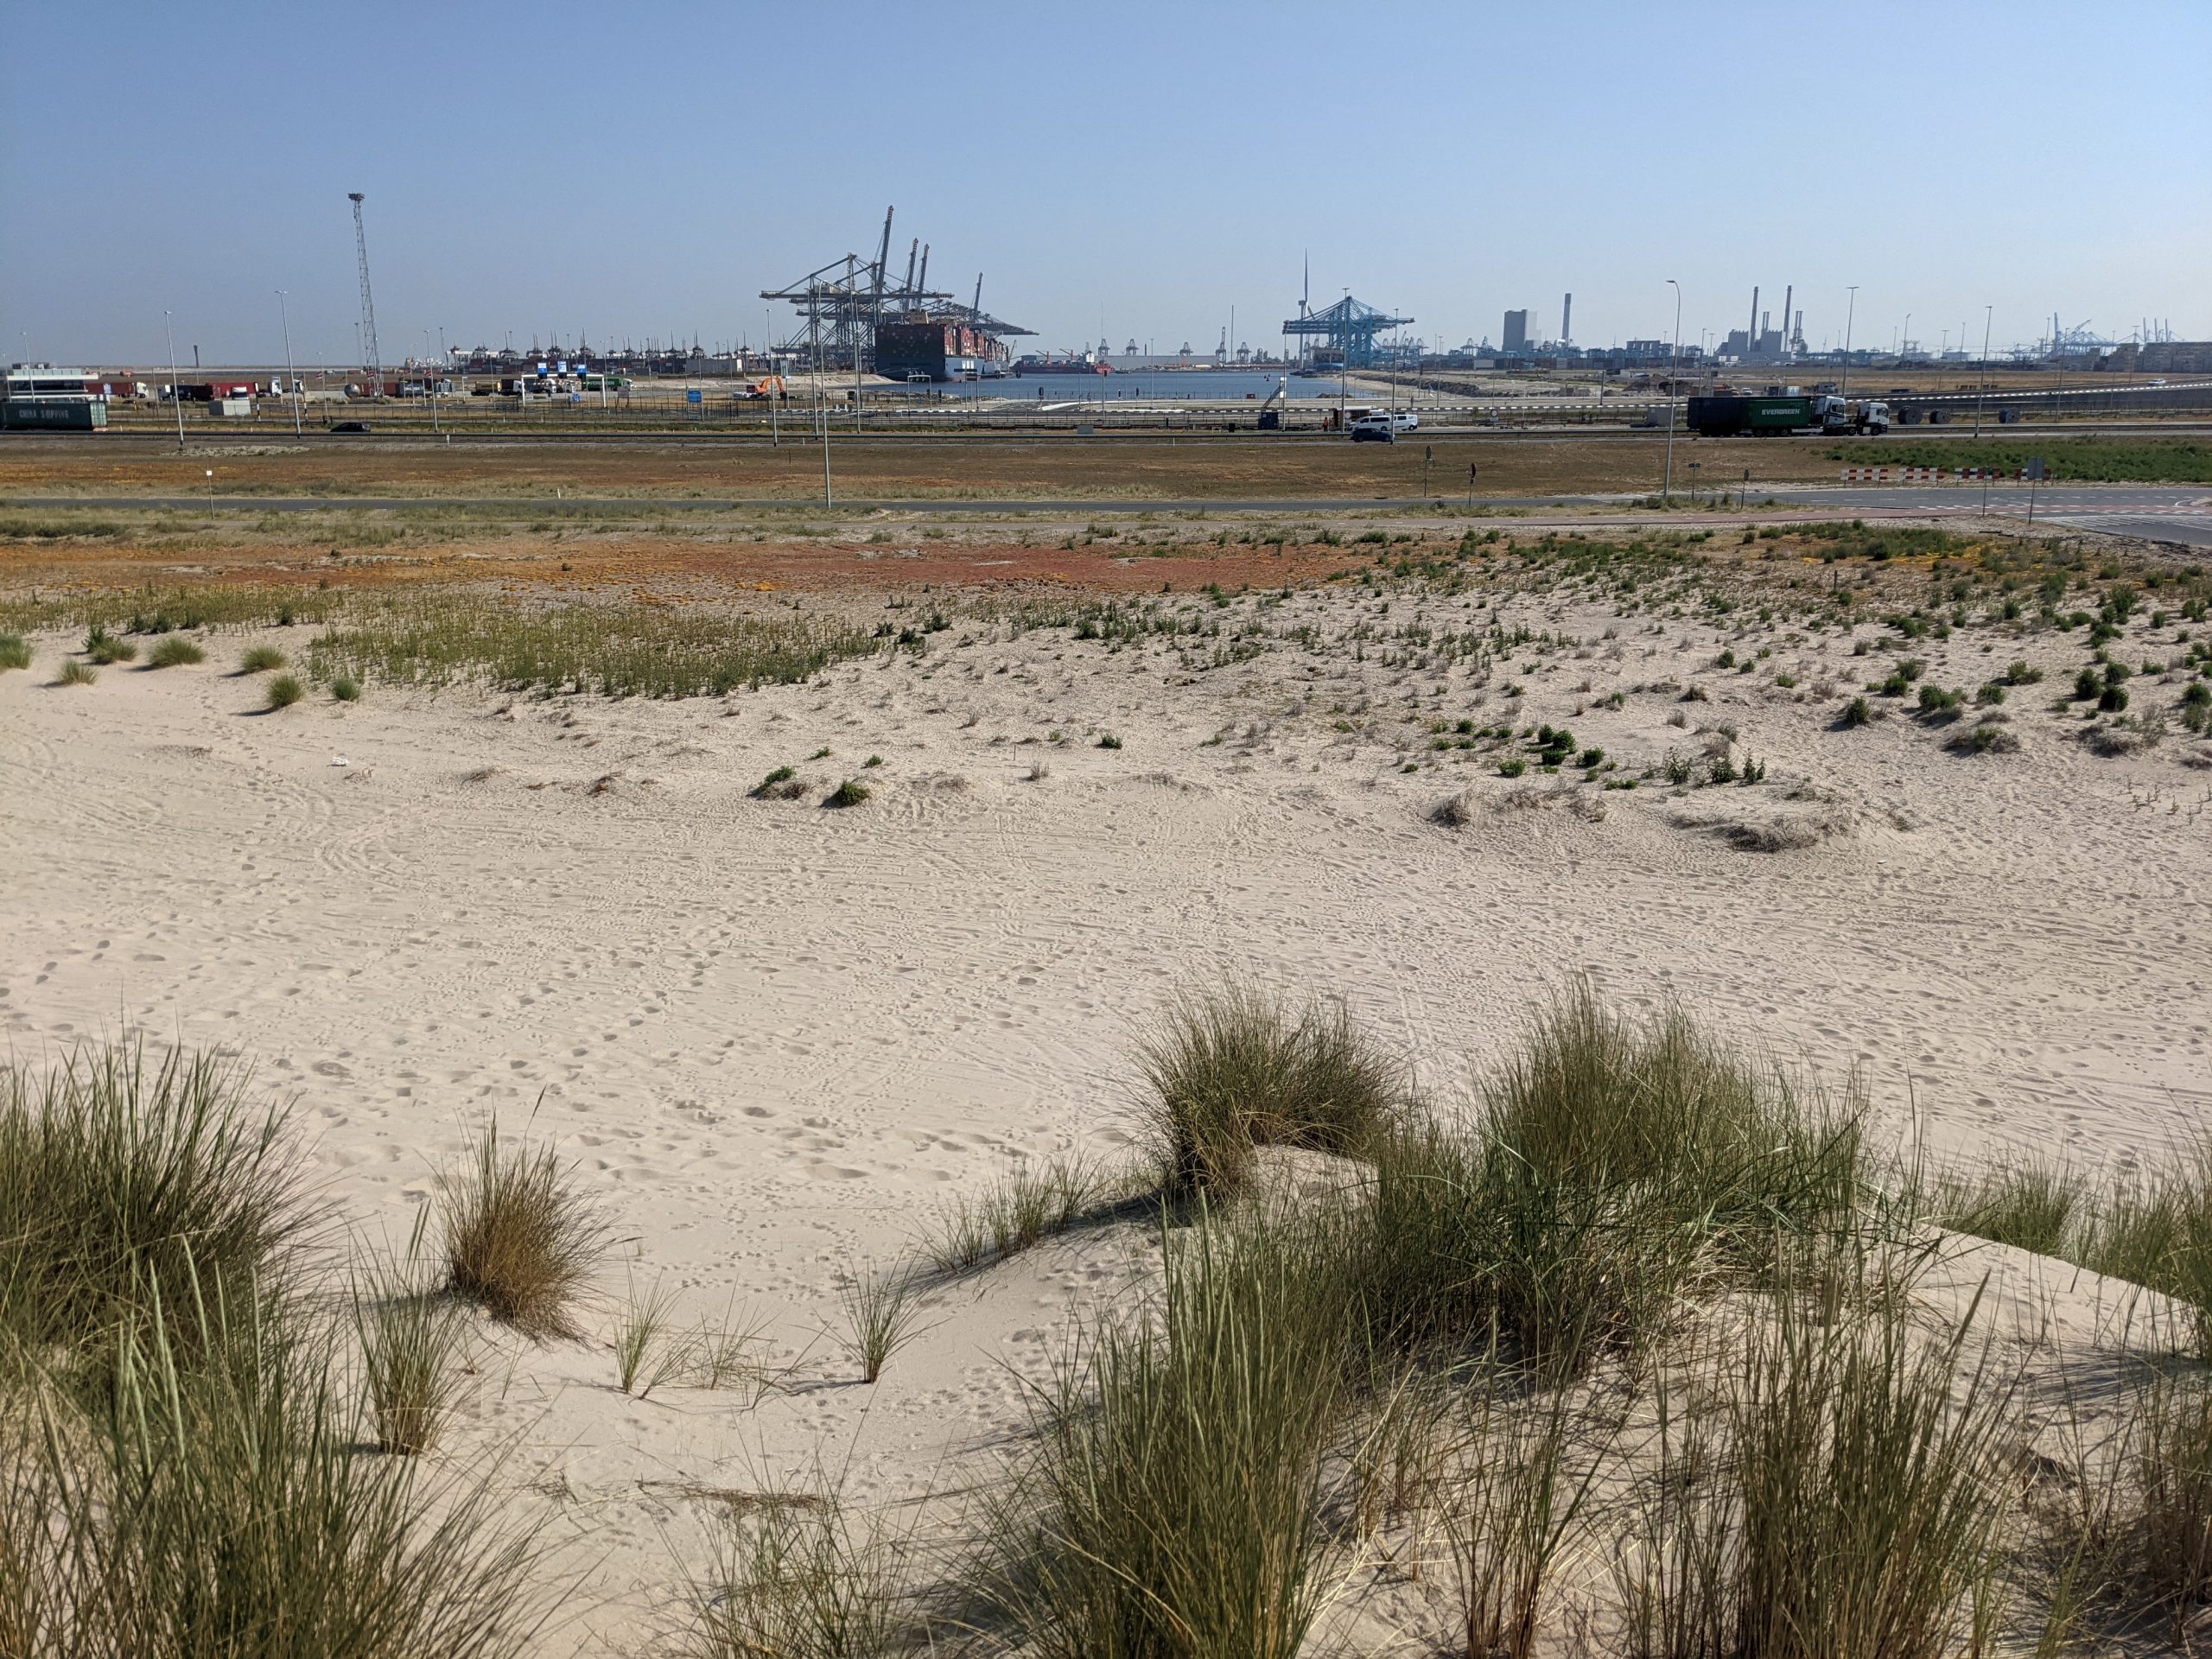 Hier komt het nieuwe havenervaringscentrum komt hier, zomer 2022 begint de bouw. (Foto Jelmer Bastiaans)